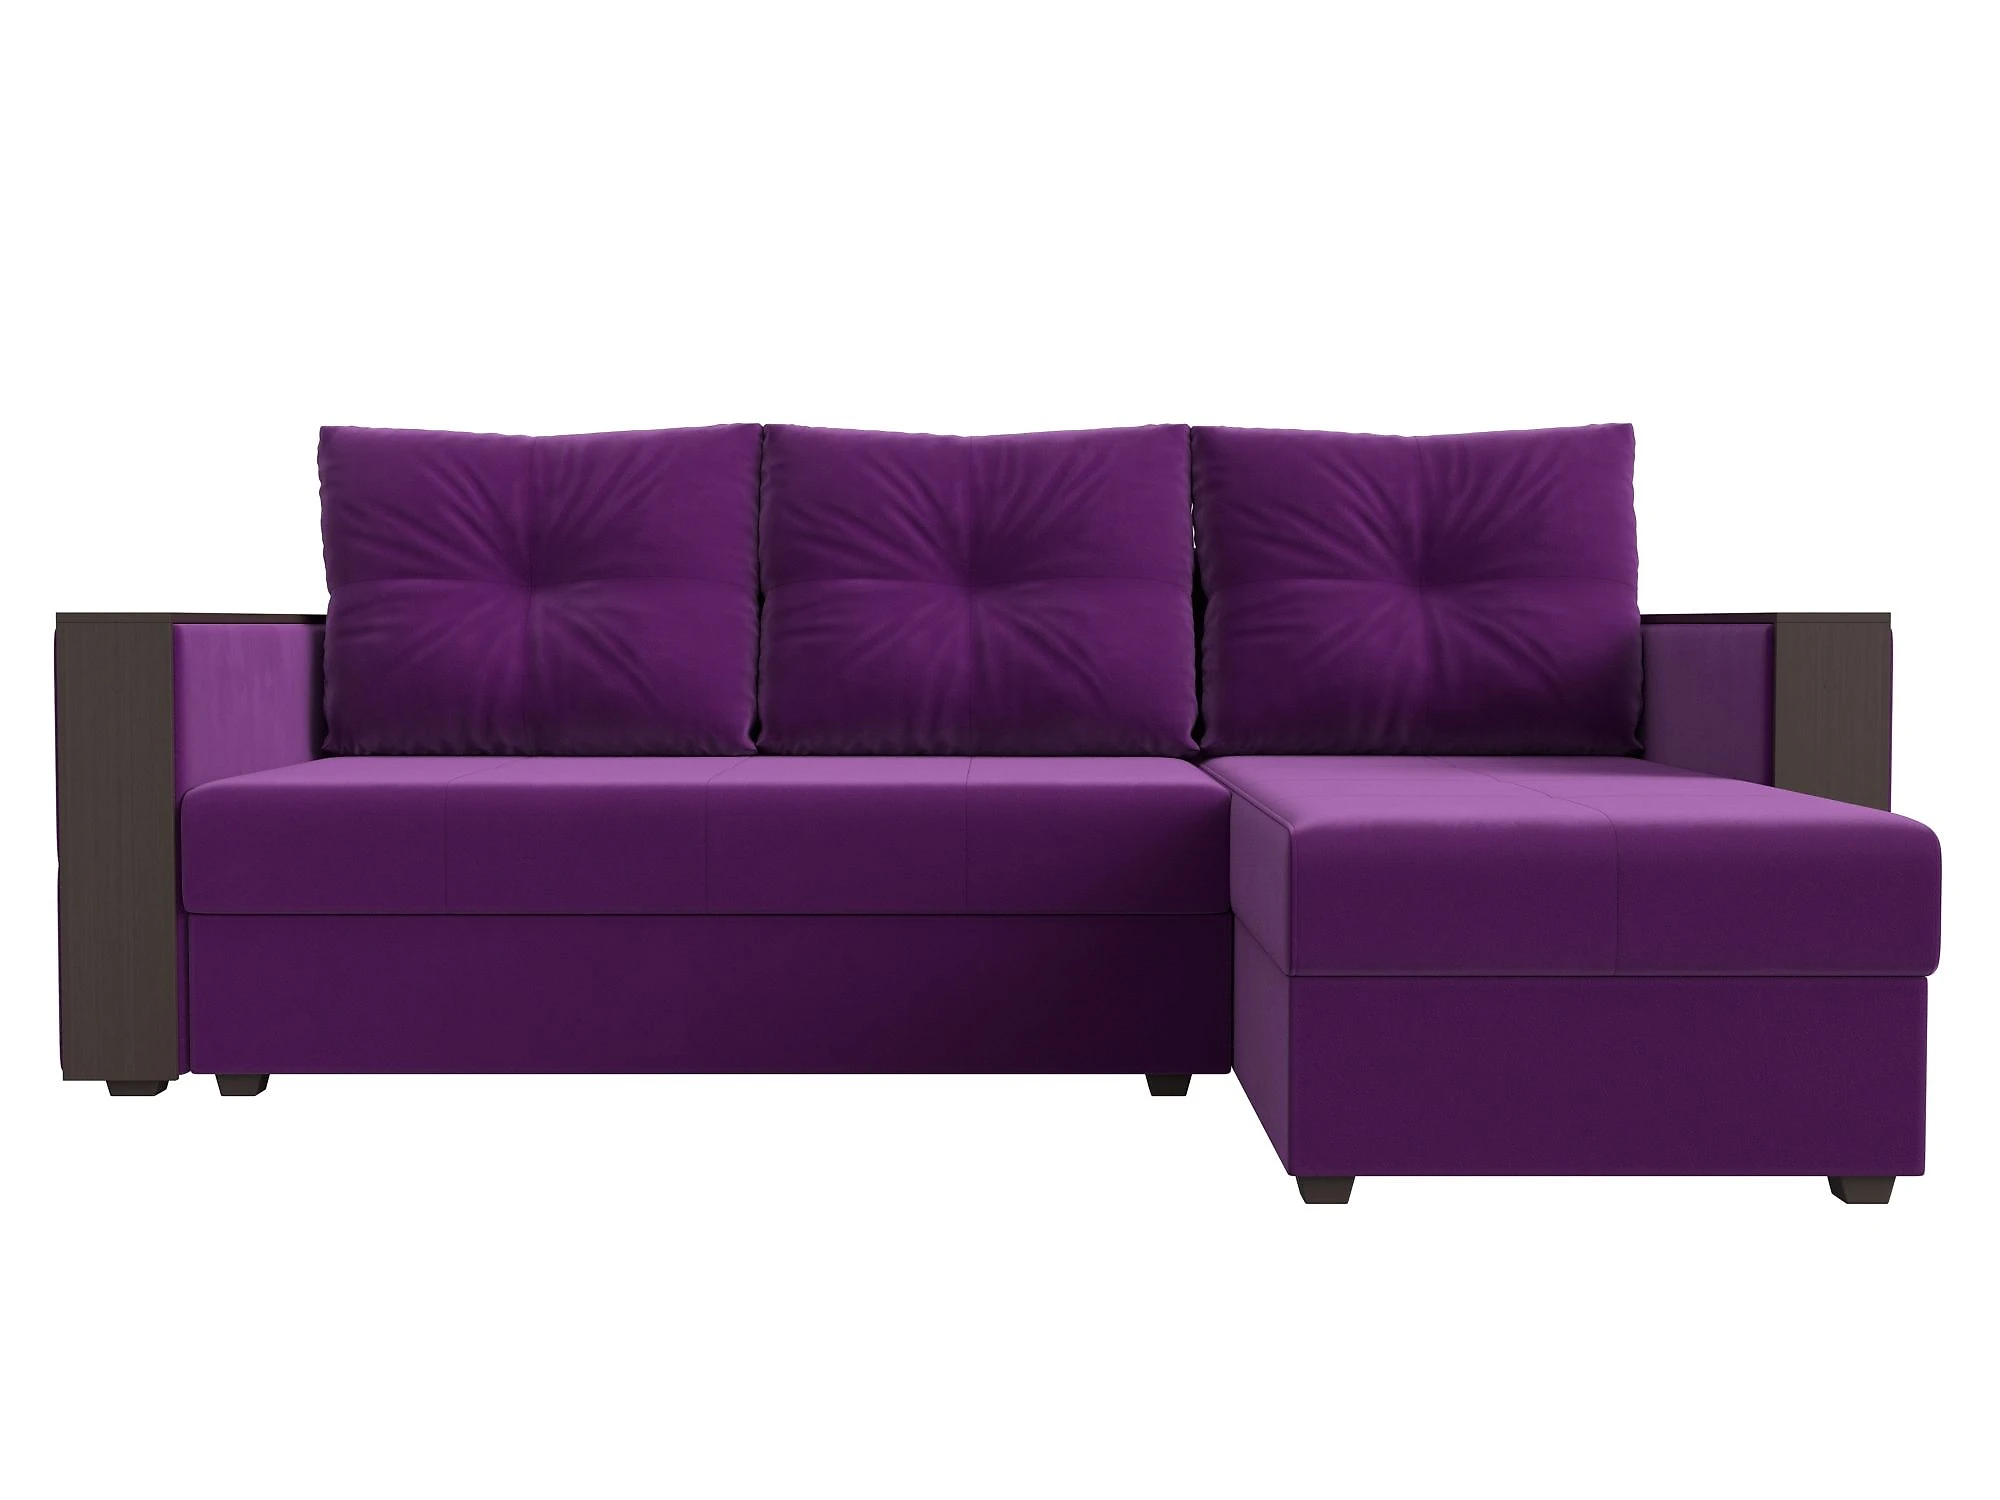 Односпальный угловой диван Валенсия Лайт Дизайн 8